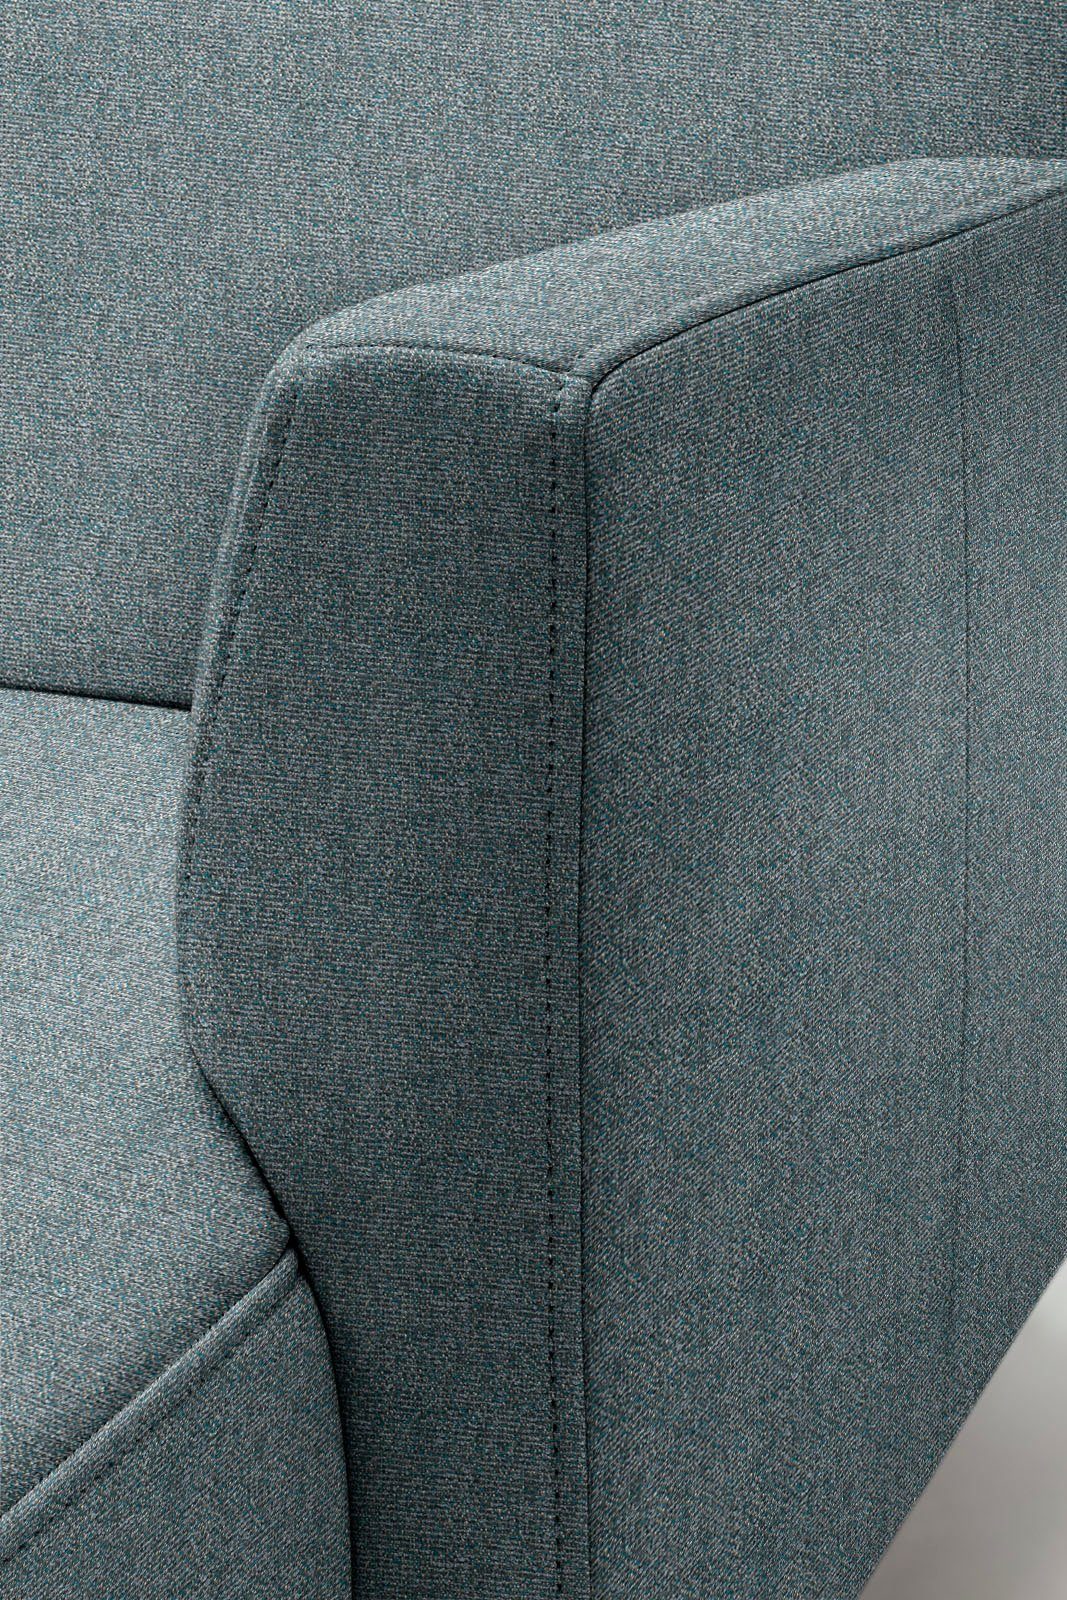 hülsta sofa Ecksofa hs.446, schwereloser minimalistischer, in Breite cm 296 Optik